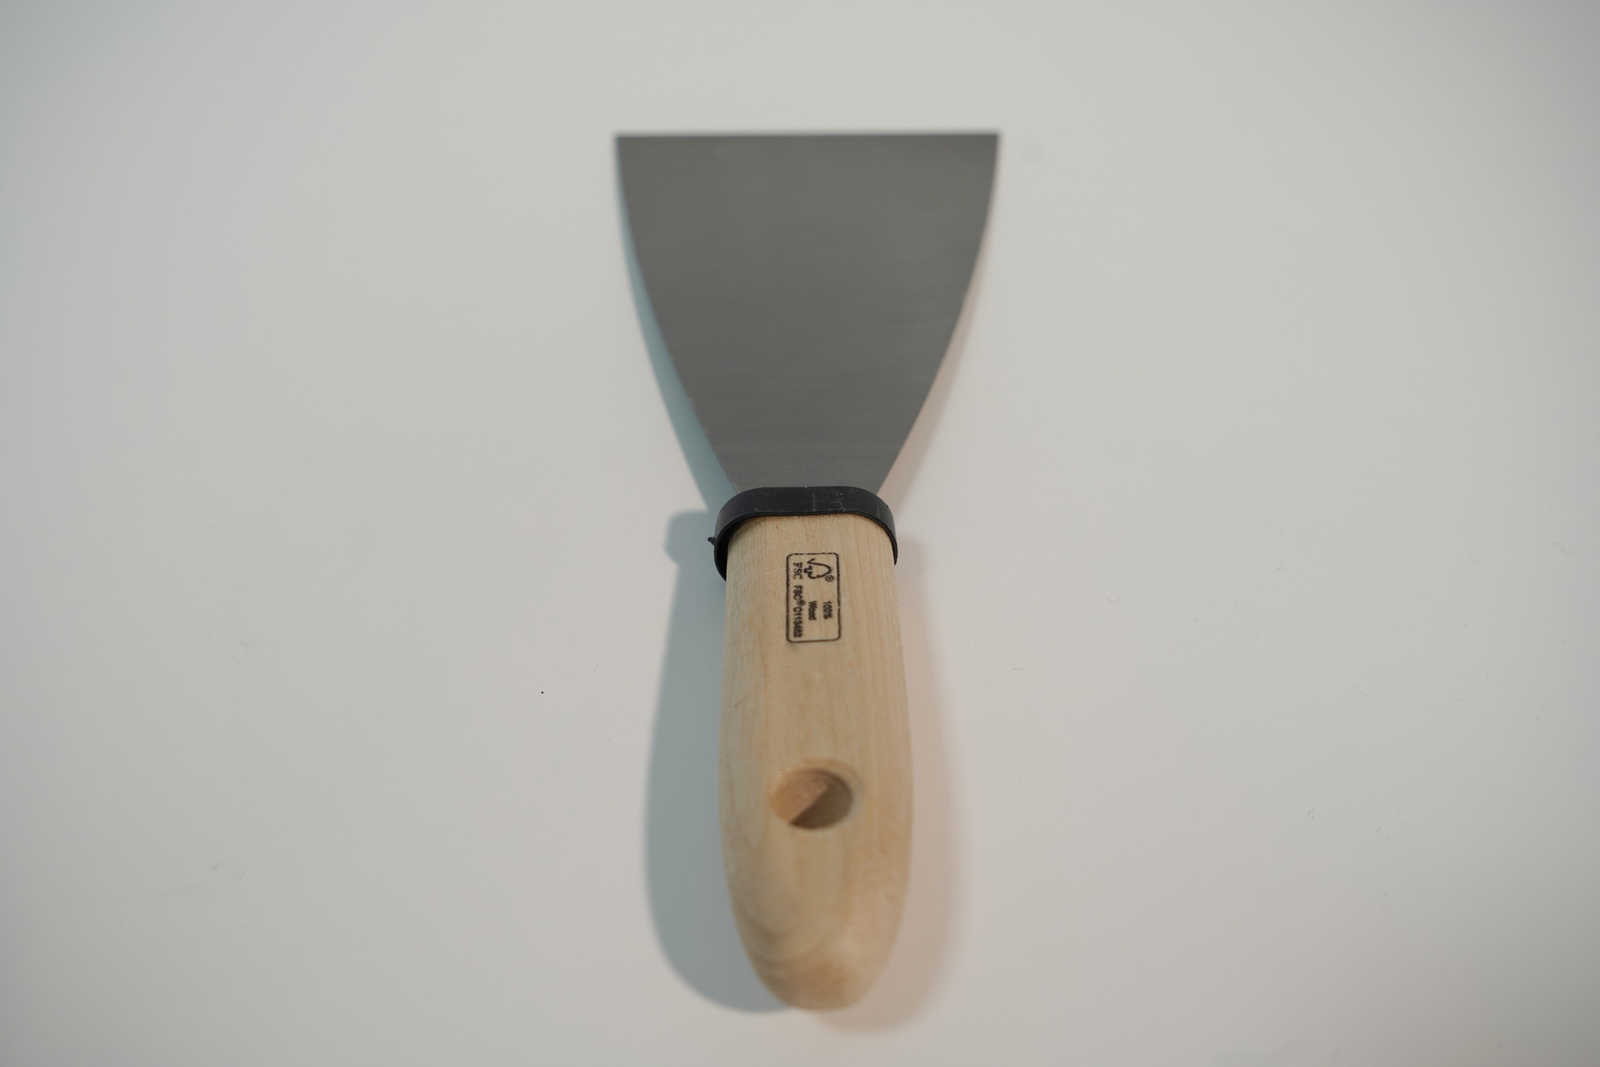             Spatule de peintre 80mm avec lame en acier flexible & manche en bois
        